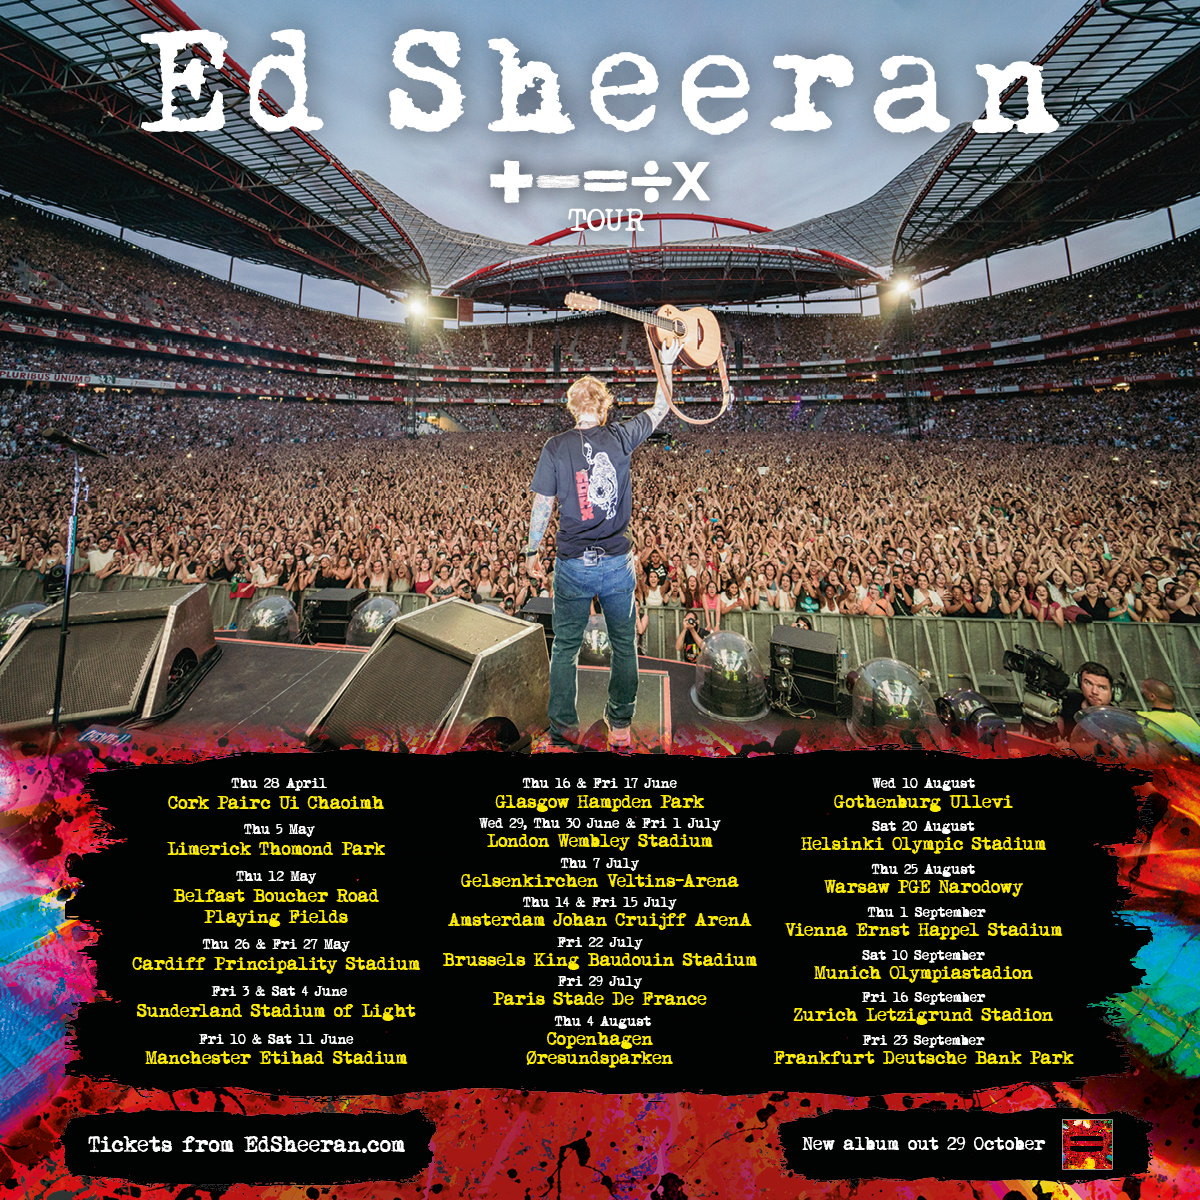 Ed Sheeran announces + = ÷ x tour for 2022 Hampden Park